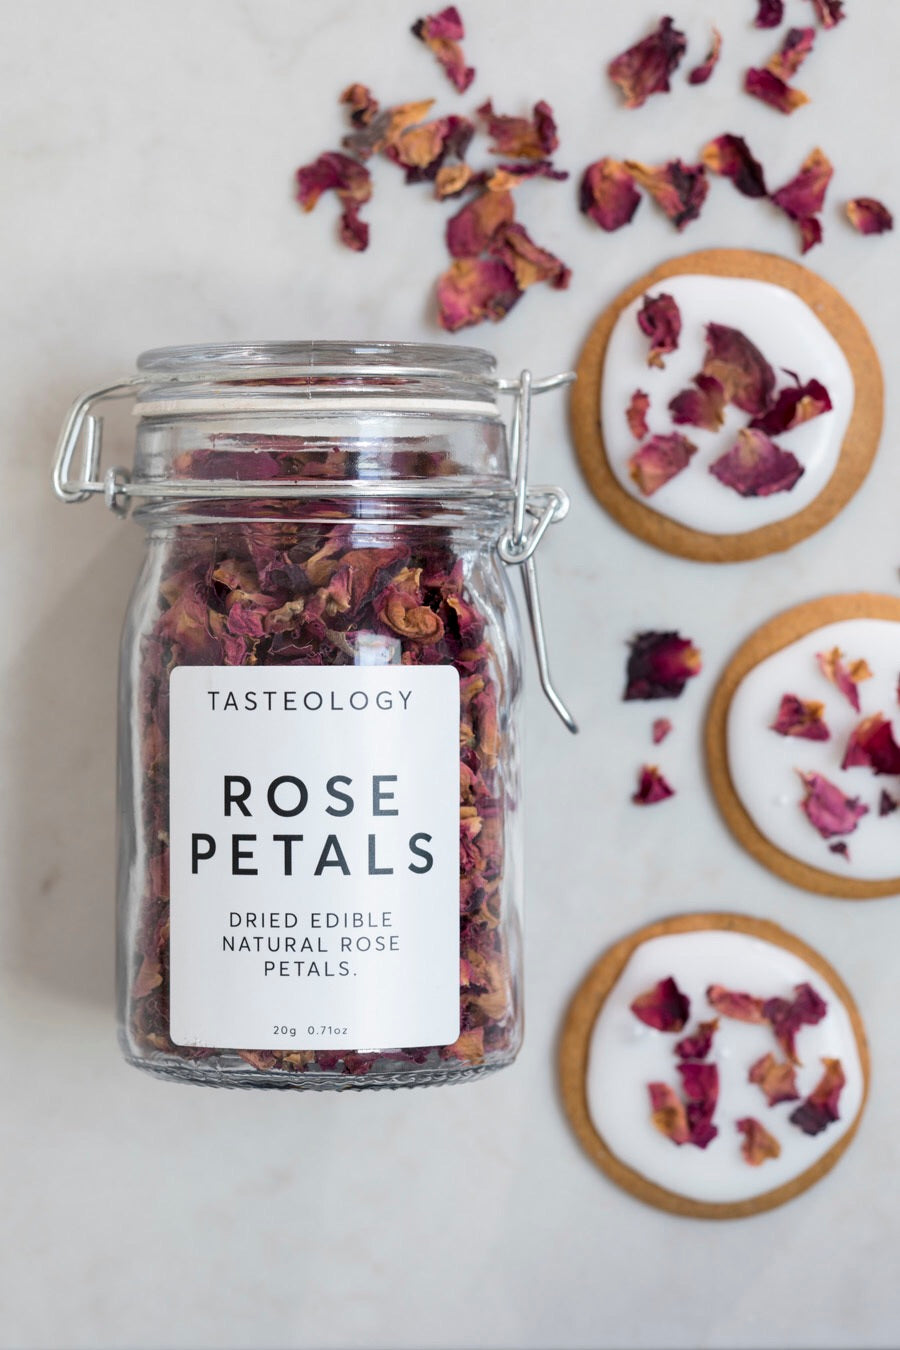 Tasteology - Rose petals